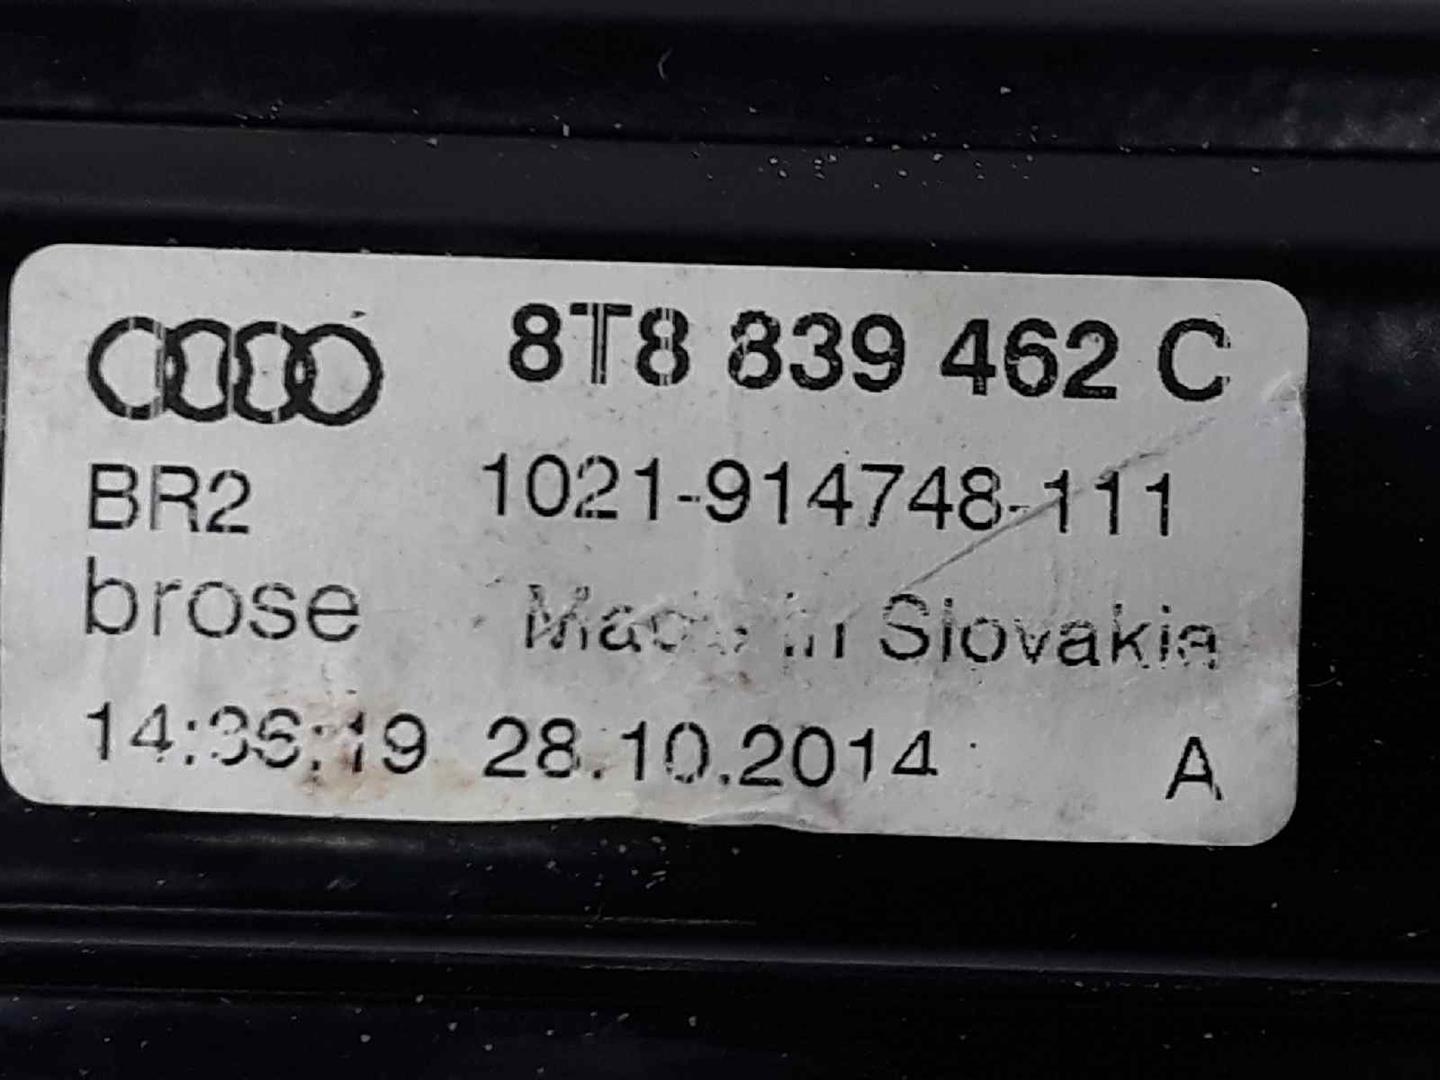 AUDI A4 B8/8K (2011-2016) Стеклоподъемник задней правой двери 8T8839462C, 1021914748111, 8T8839462C 19627723